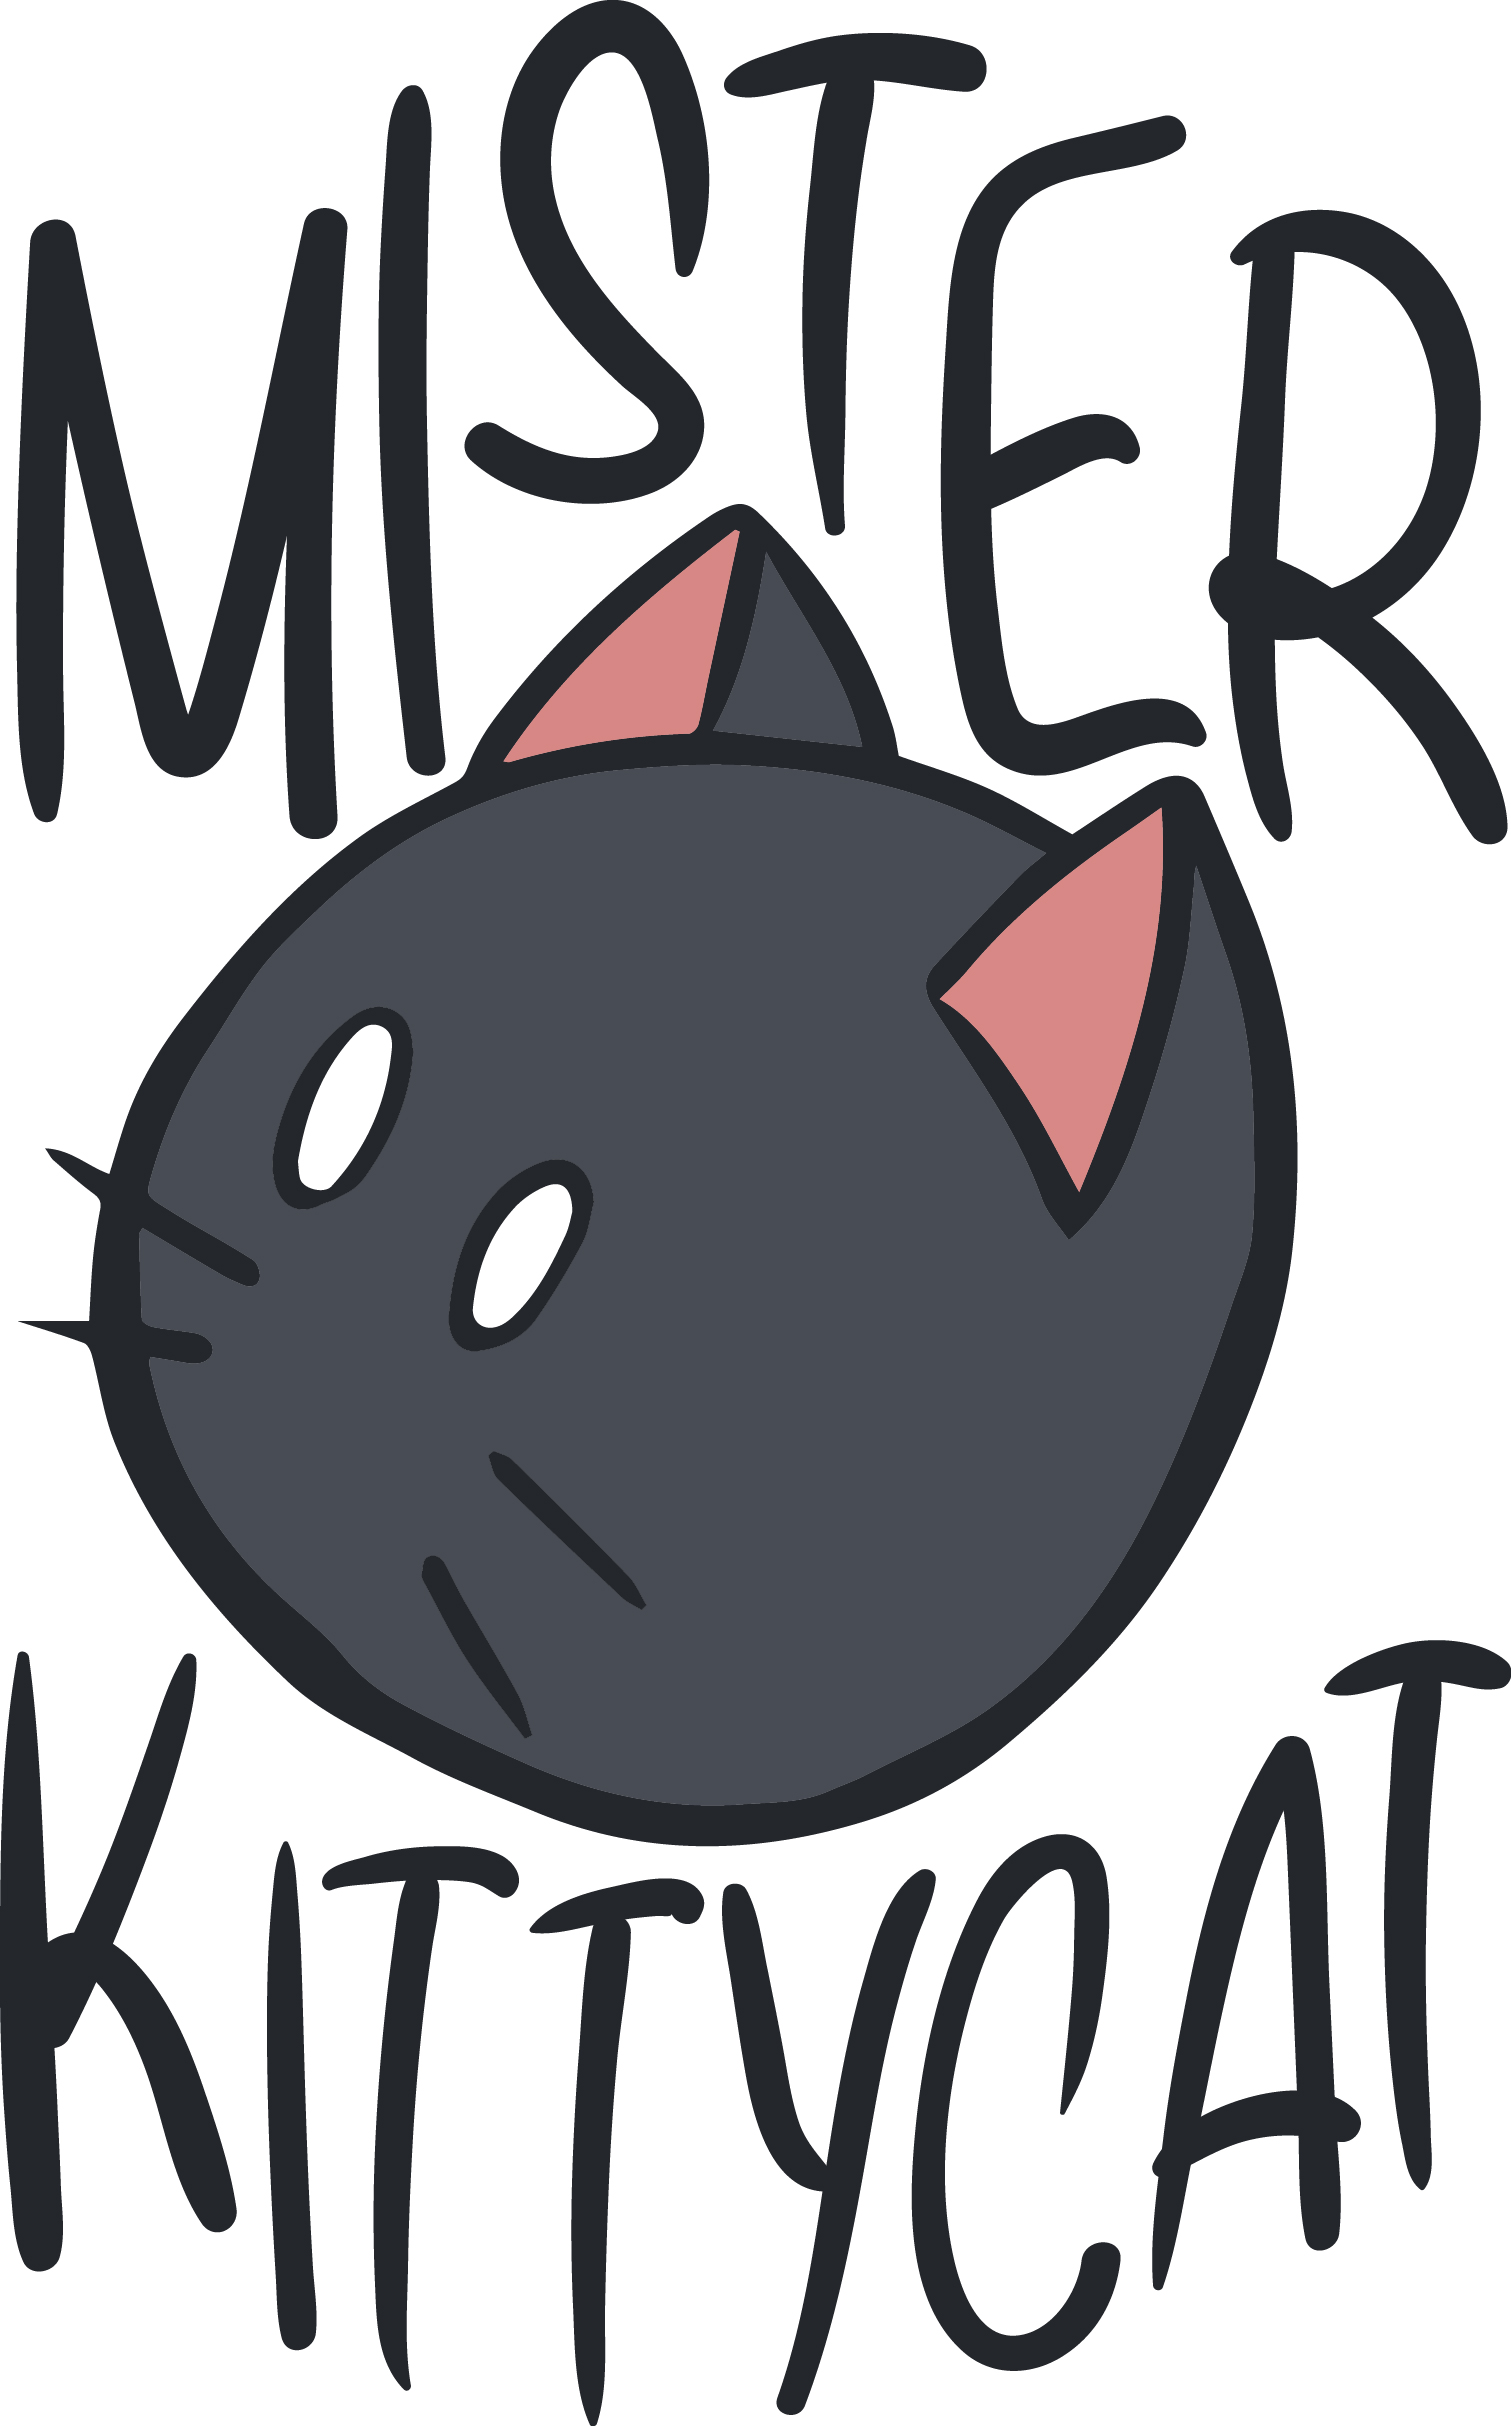 Mr. KittyCat